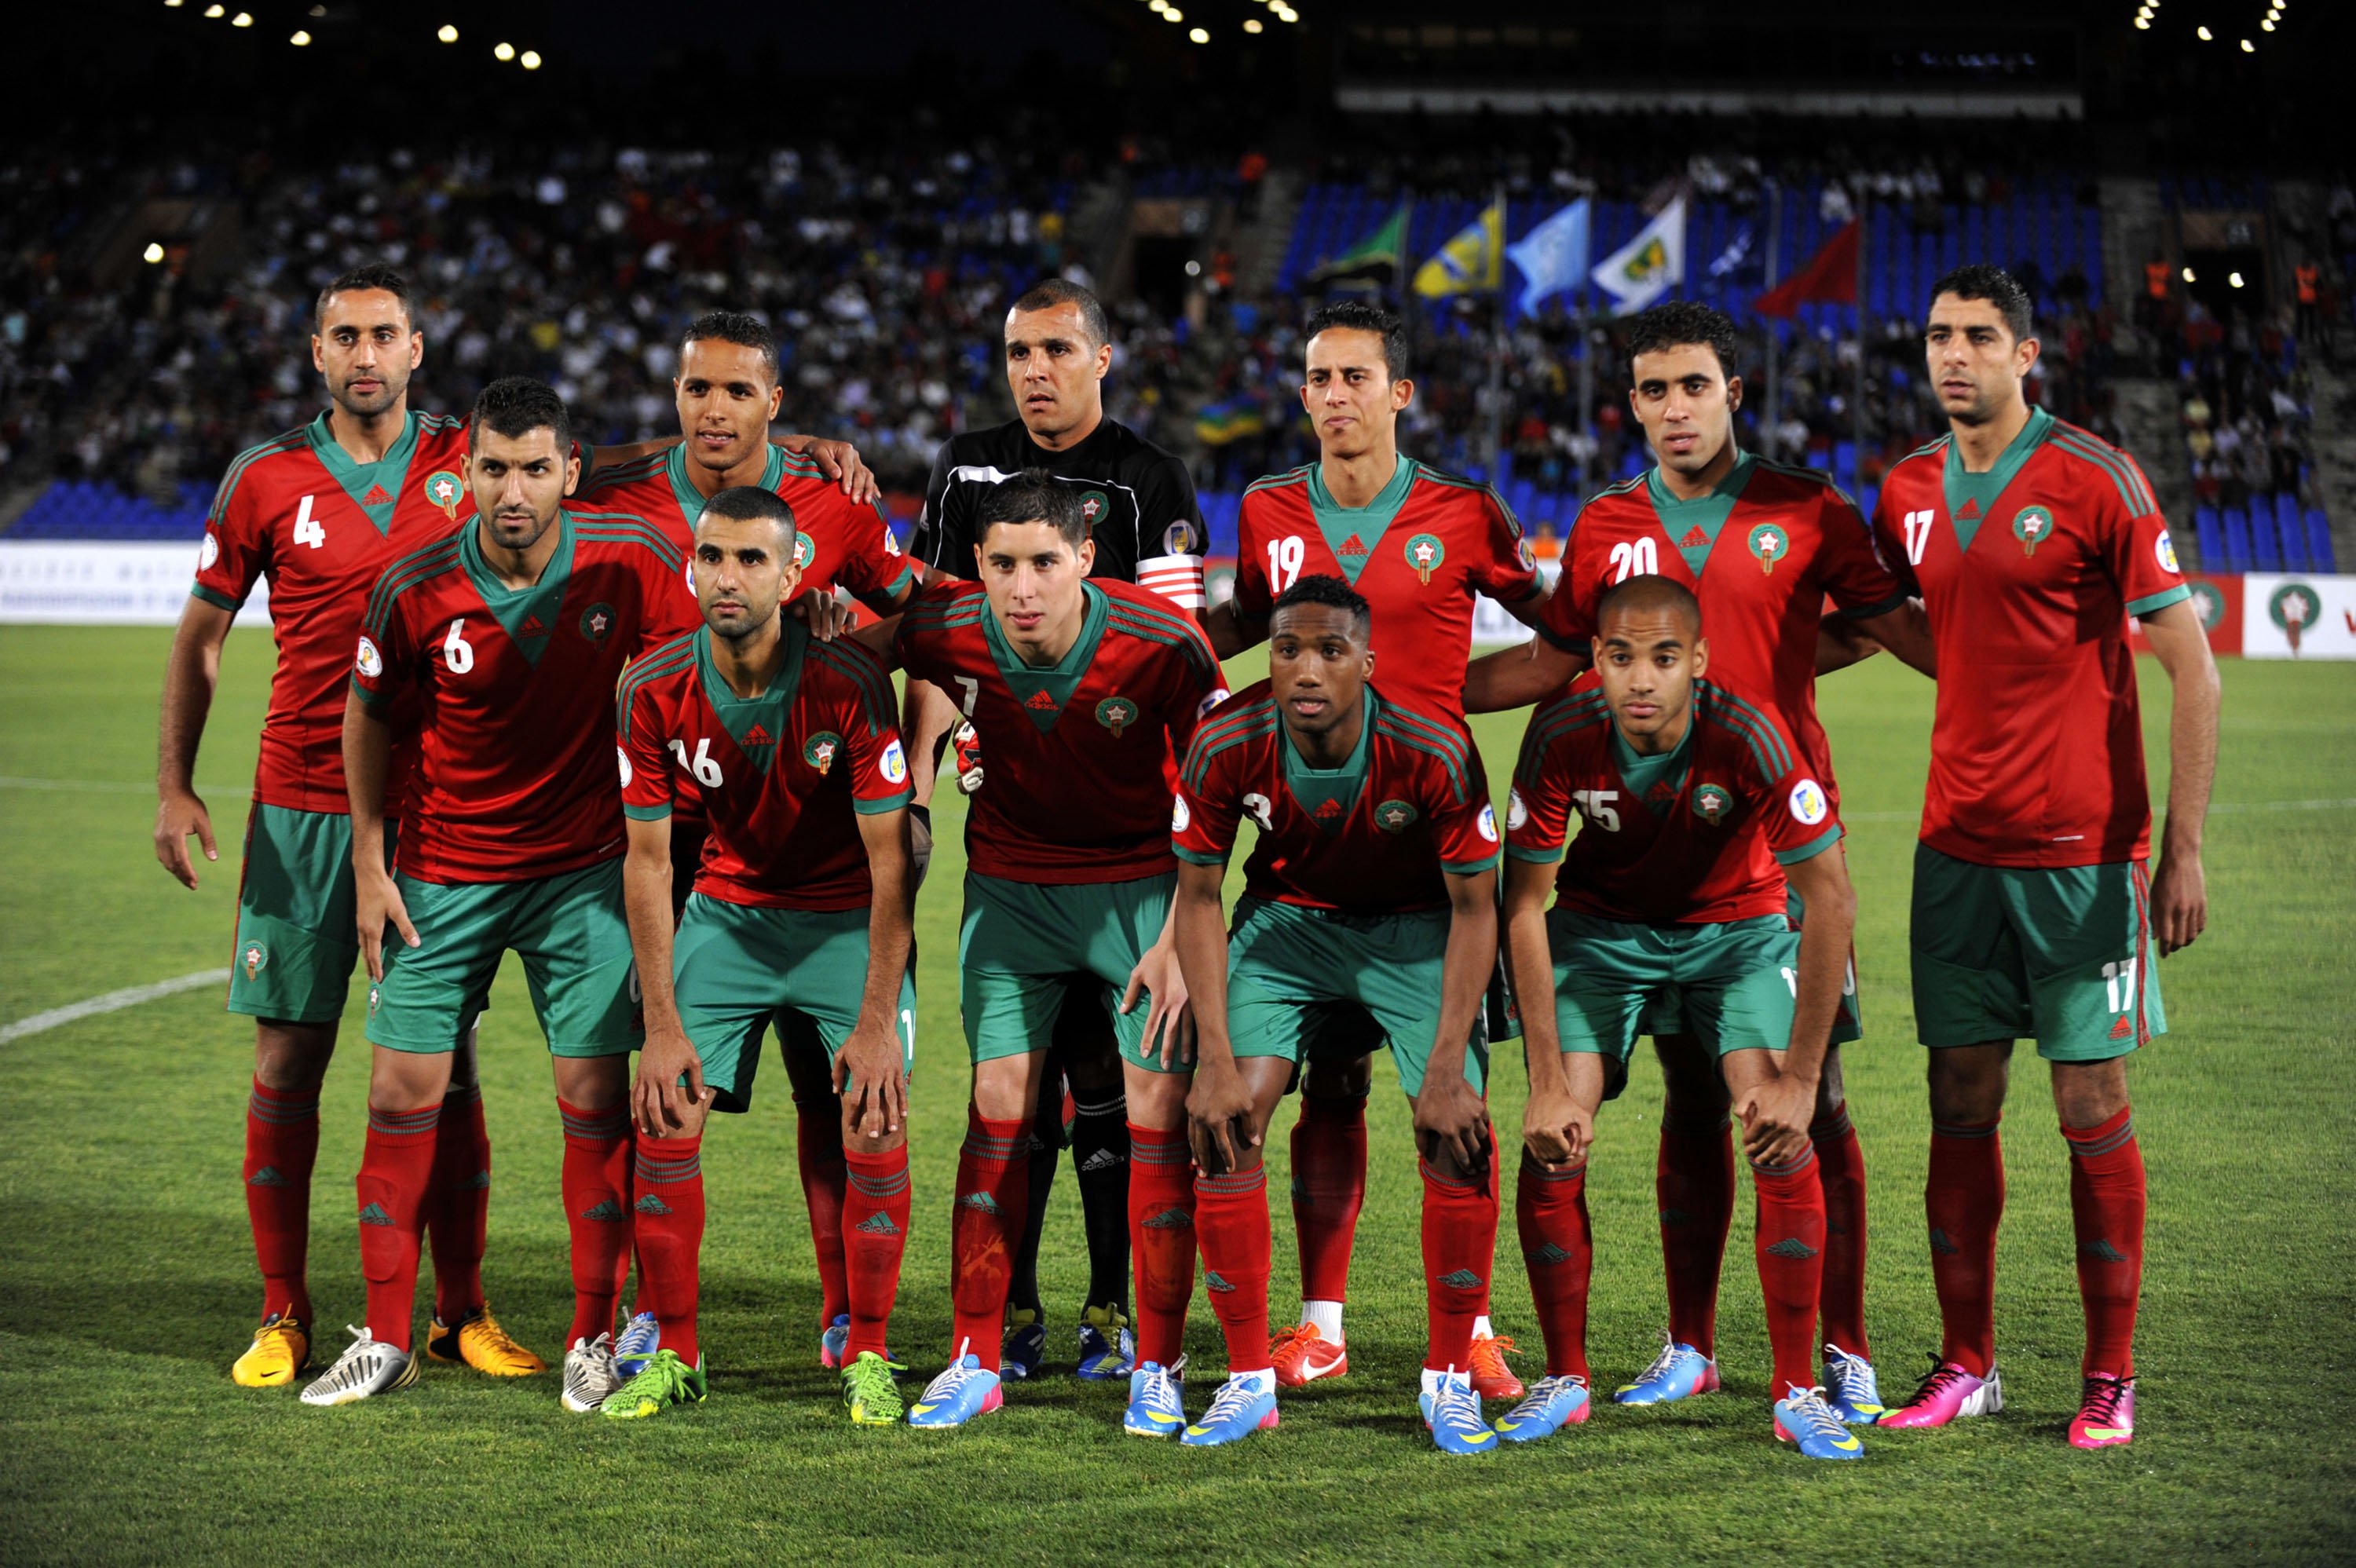 صور منتخب تونس 4 1 صور منتخب المغرب خلفيات المنتخب المغربي